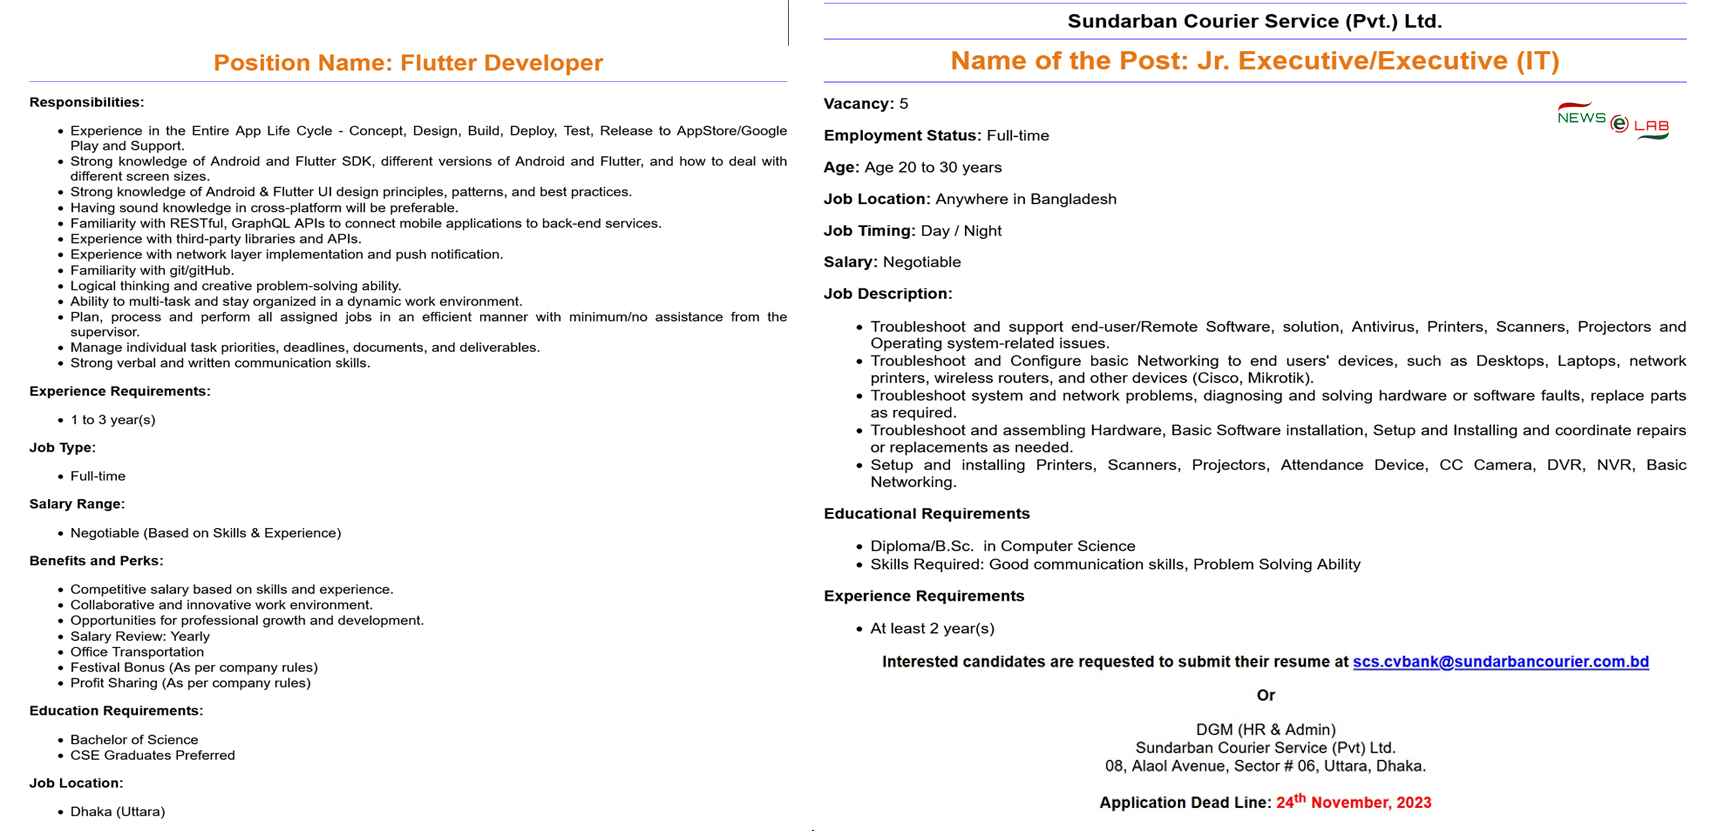 সুন্দরবন কুরিয়ার সার্ভিস নিয়োগ বিজ্ঞপ্তি ২০২৩ - Sundarban Courier Service (Pvt.) Ltd Job Circular 2023 - কুরিয়ার সার্ভিস নিয়োগ বিজ্ঞপ্তি ২০২৩ - Courier Service Ltd Job Circular 2023 - সুন্দরবন কুরিয়ার সার্ভিস নিয়োগ বিজ্ঞপ্তি ২০২৪ - Sundarban Courier Service (Pvt.) Ltd Job Circular 2024 - কুরিয়ার সার্ভিস নিয়োগ বিজ্ঞপ্তি ২০২৪ - Courier Service Ltd Job Circular 2024